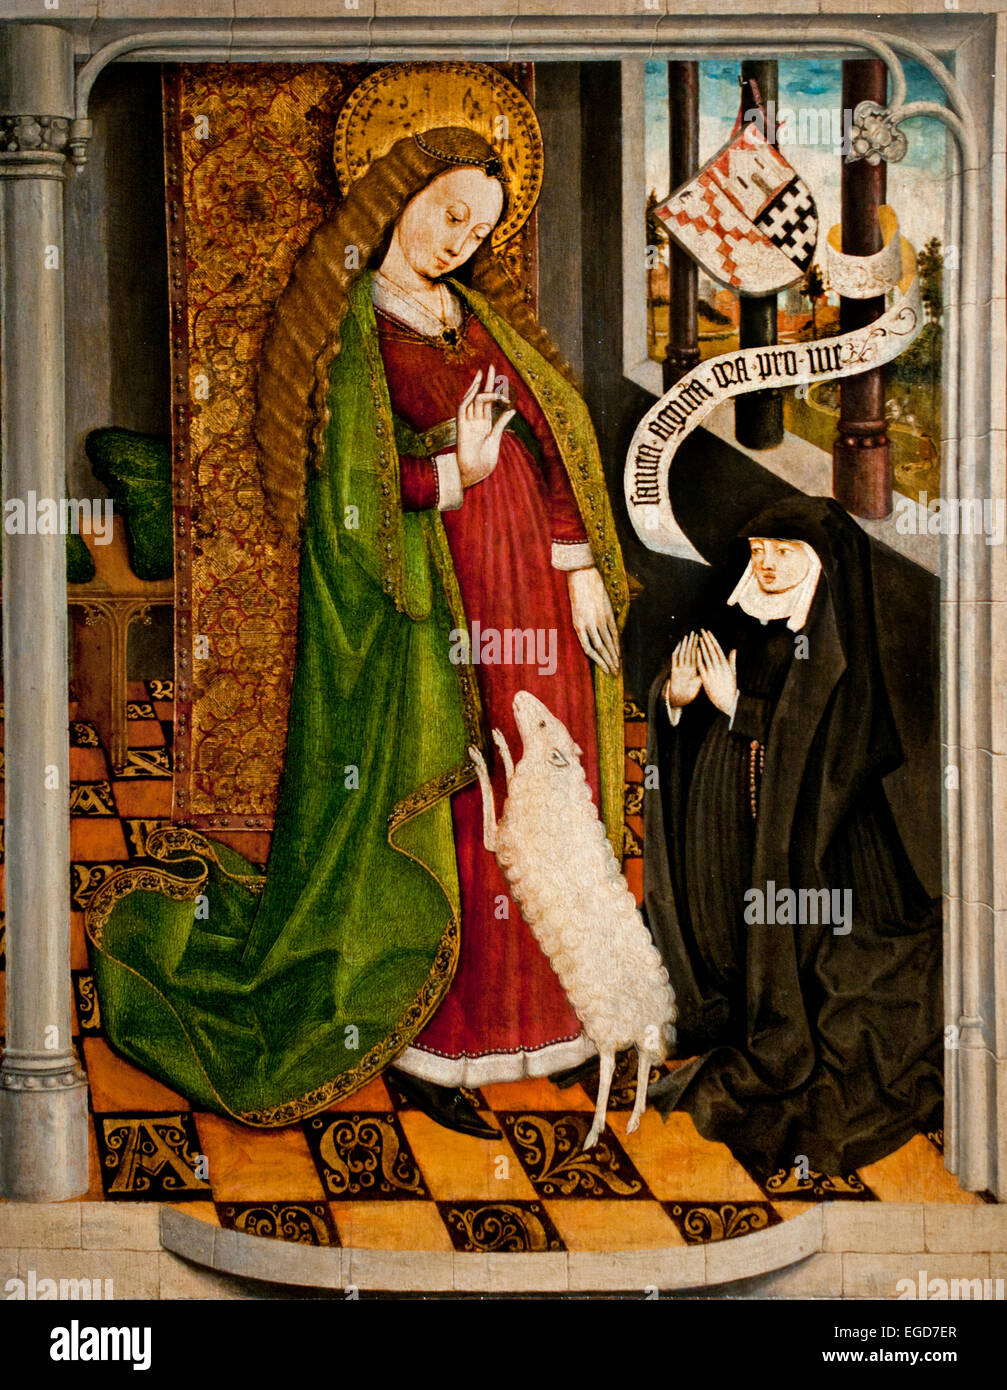 Geertruy Haeck à genoux en adoration devant Saint Agnes 1465 Dordrecht Pays-bas Néerlandais moyen-âge médiéval Banque D'Images